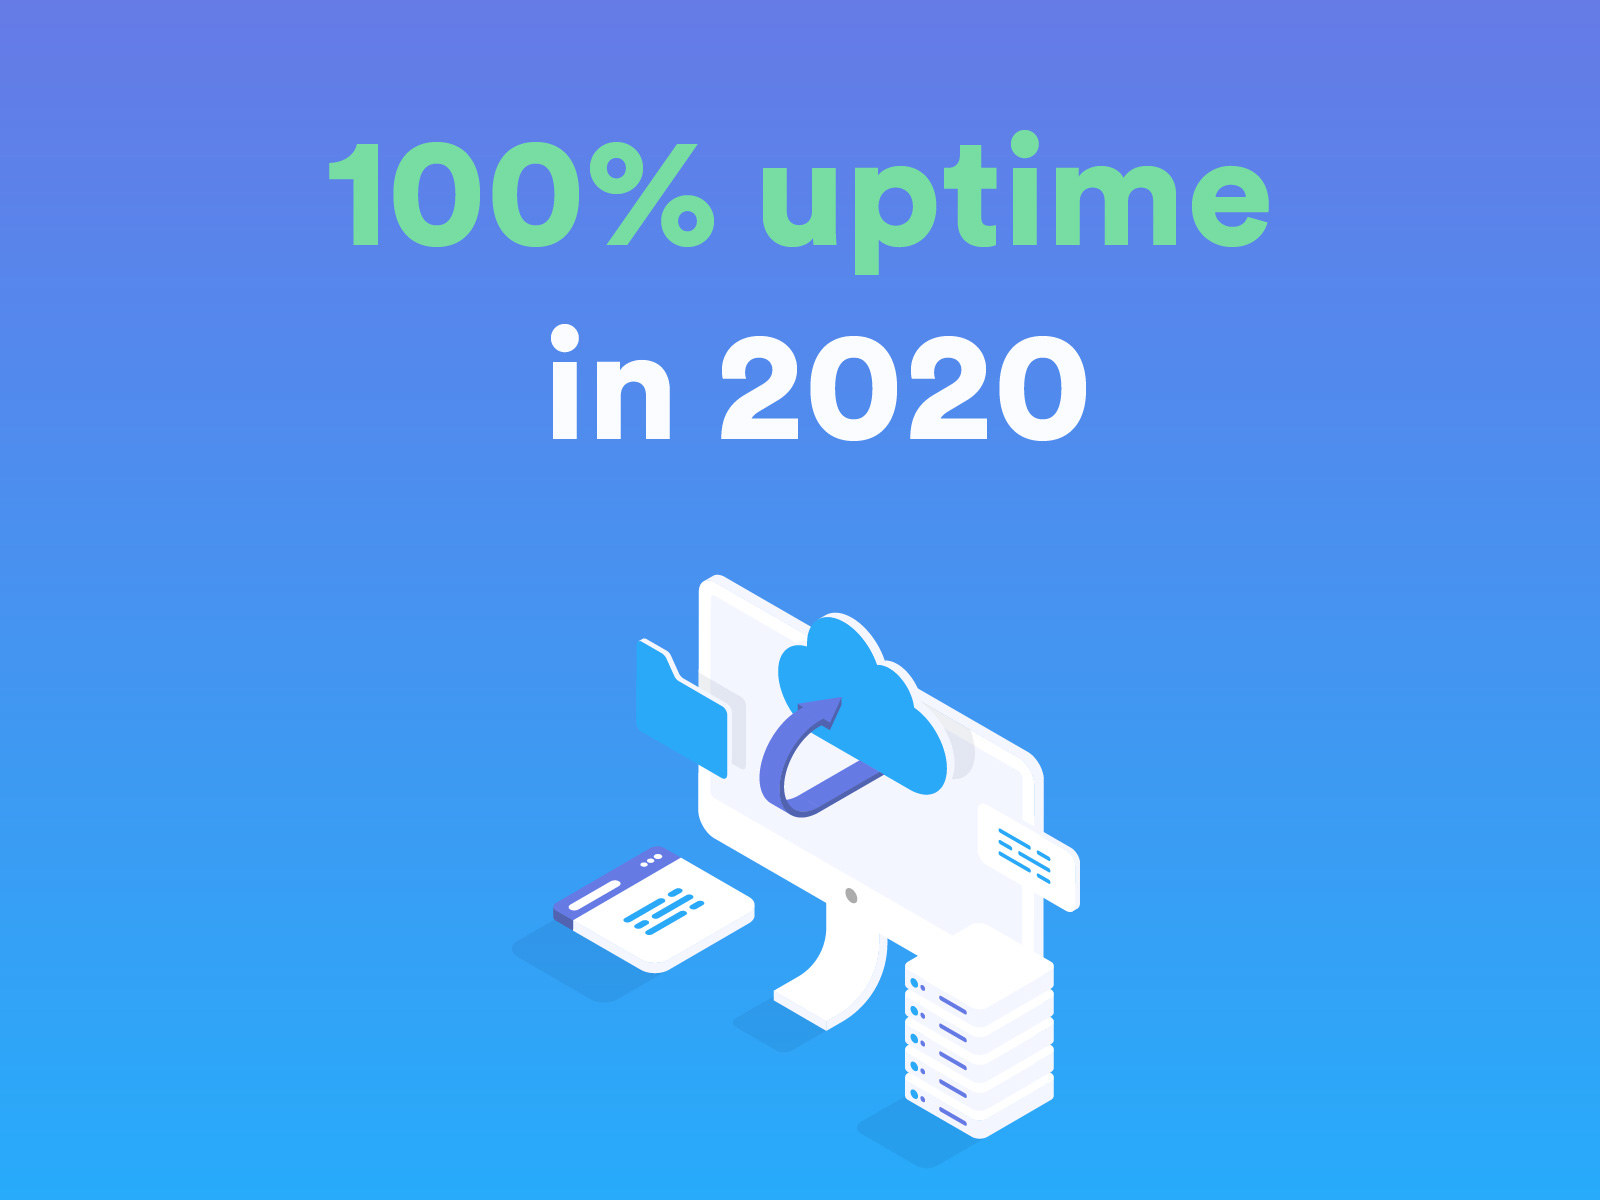 GatewayAPI Delivered an Uptime of 100% in 2020